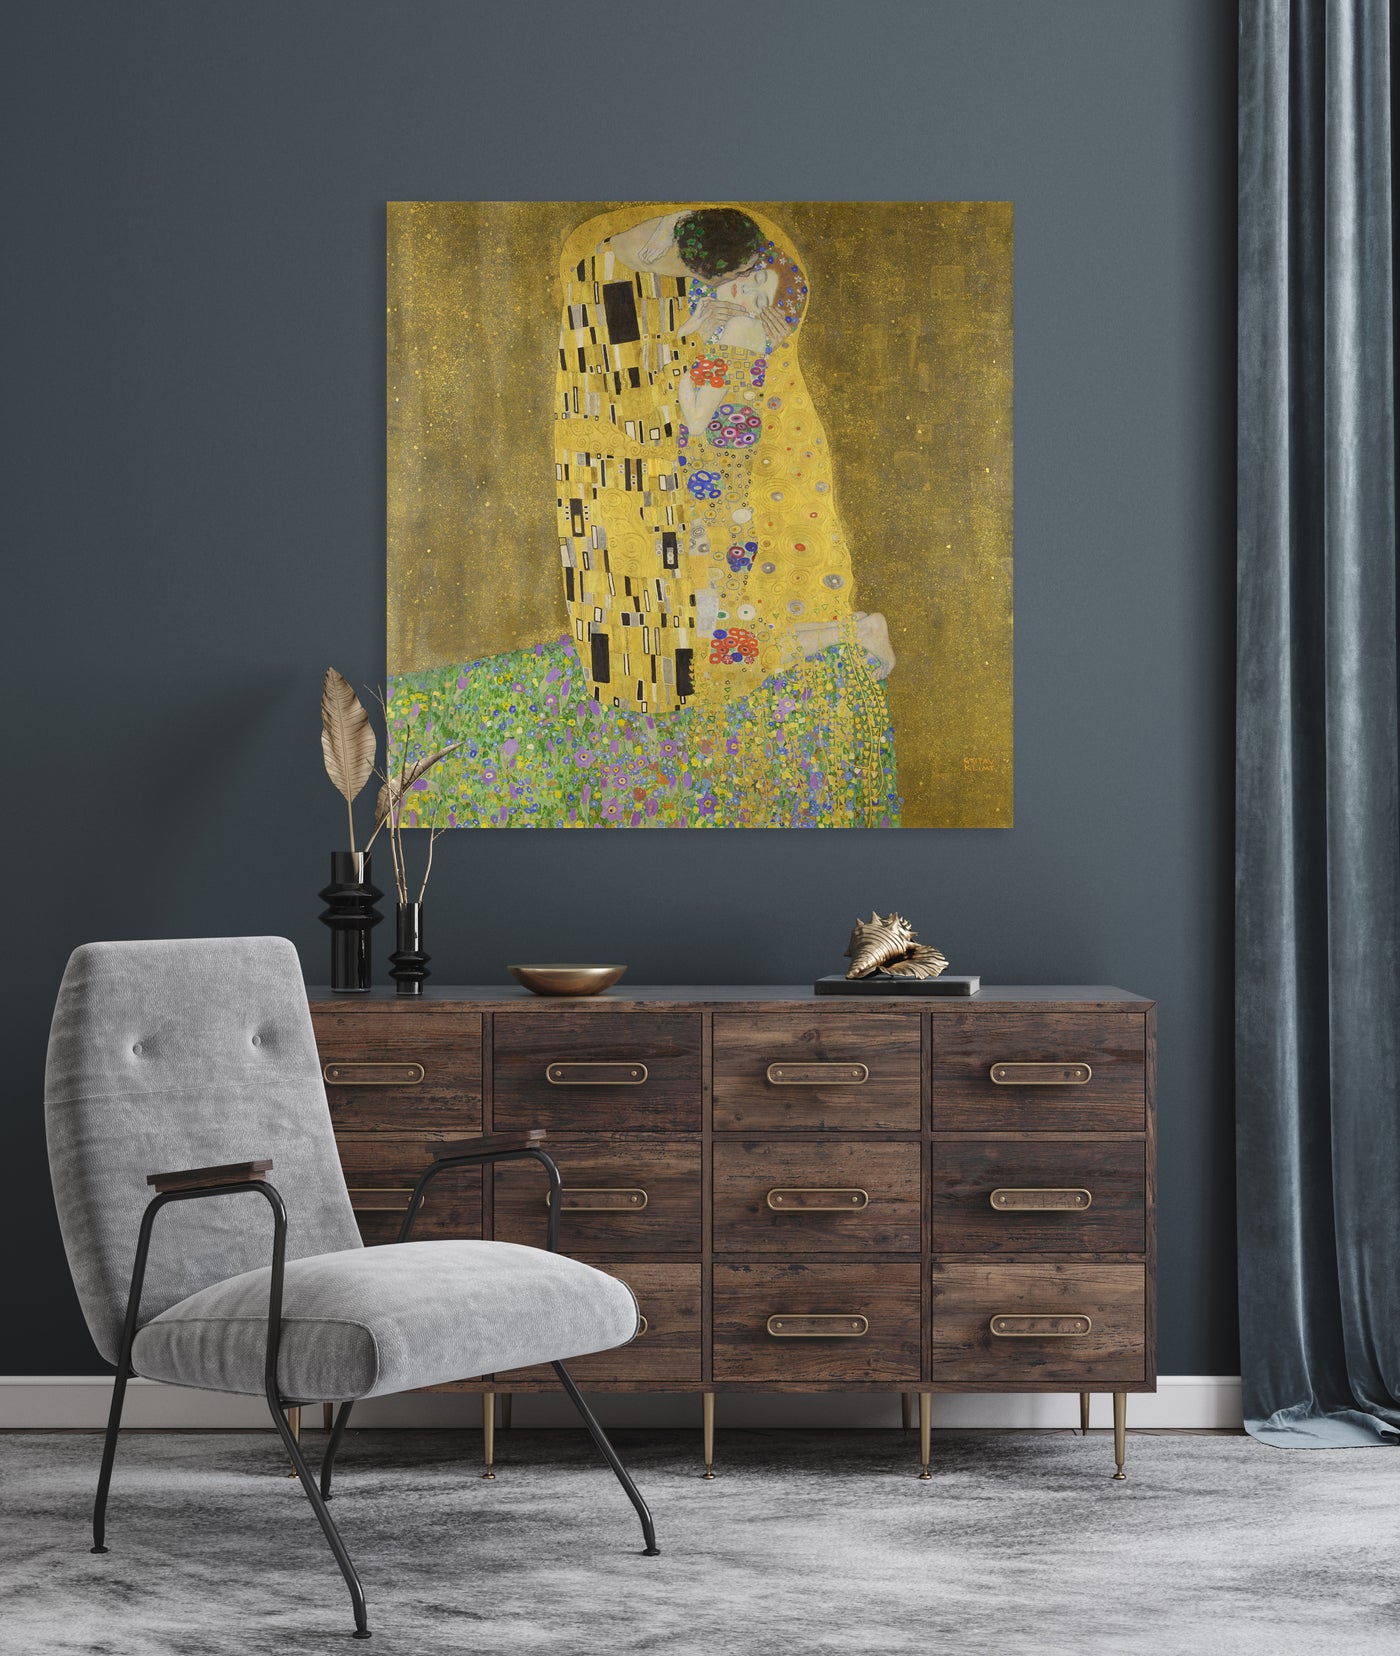 De kus - Gustav Klimt